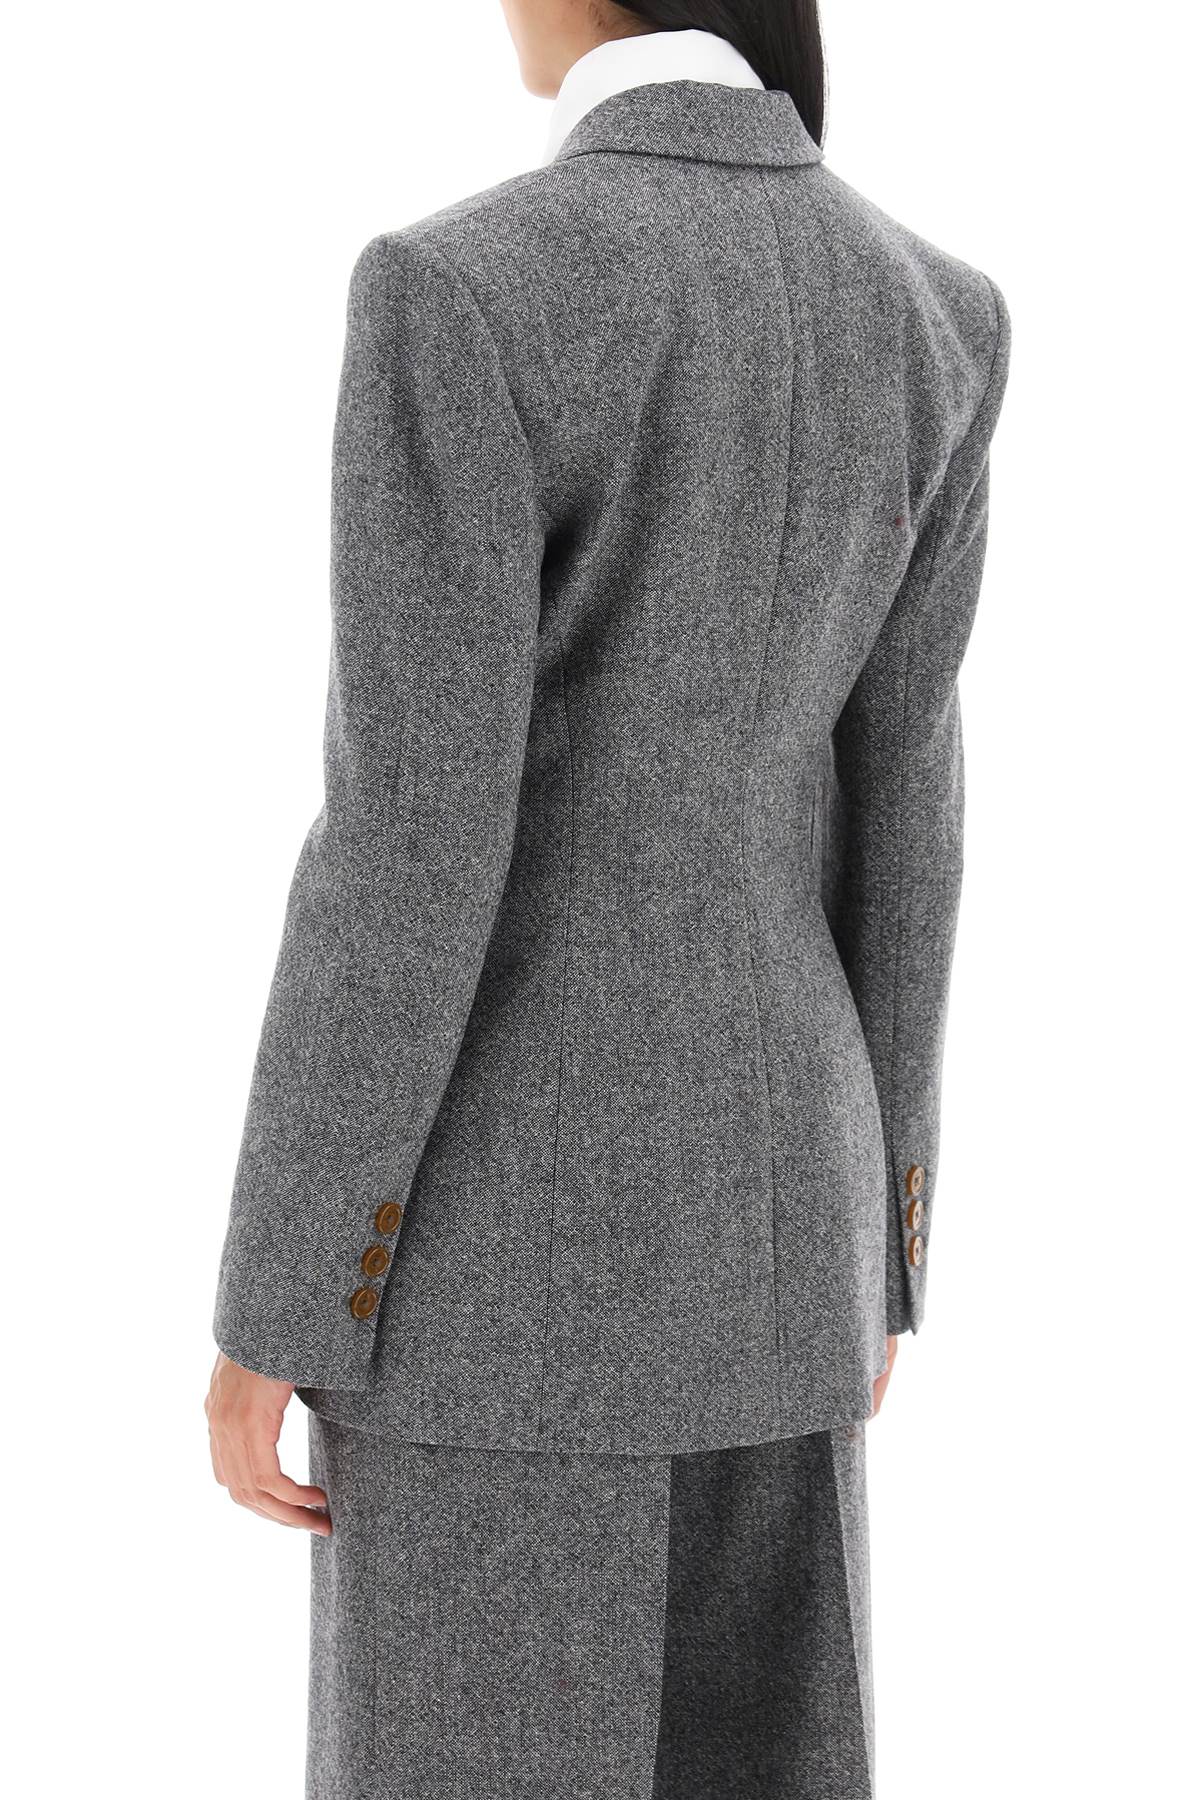 Áo khoác đôi thời trang đẹp mắt với tweed Donegal đang thịnh hành cho phái nữ - FW23